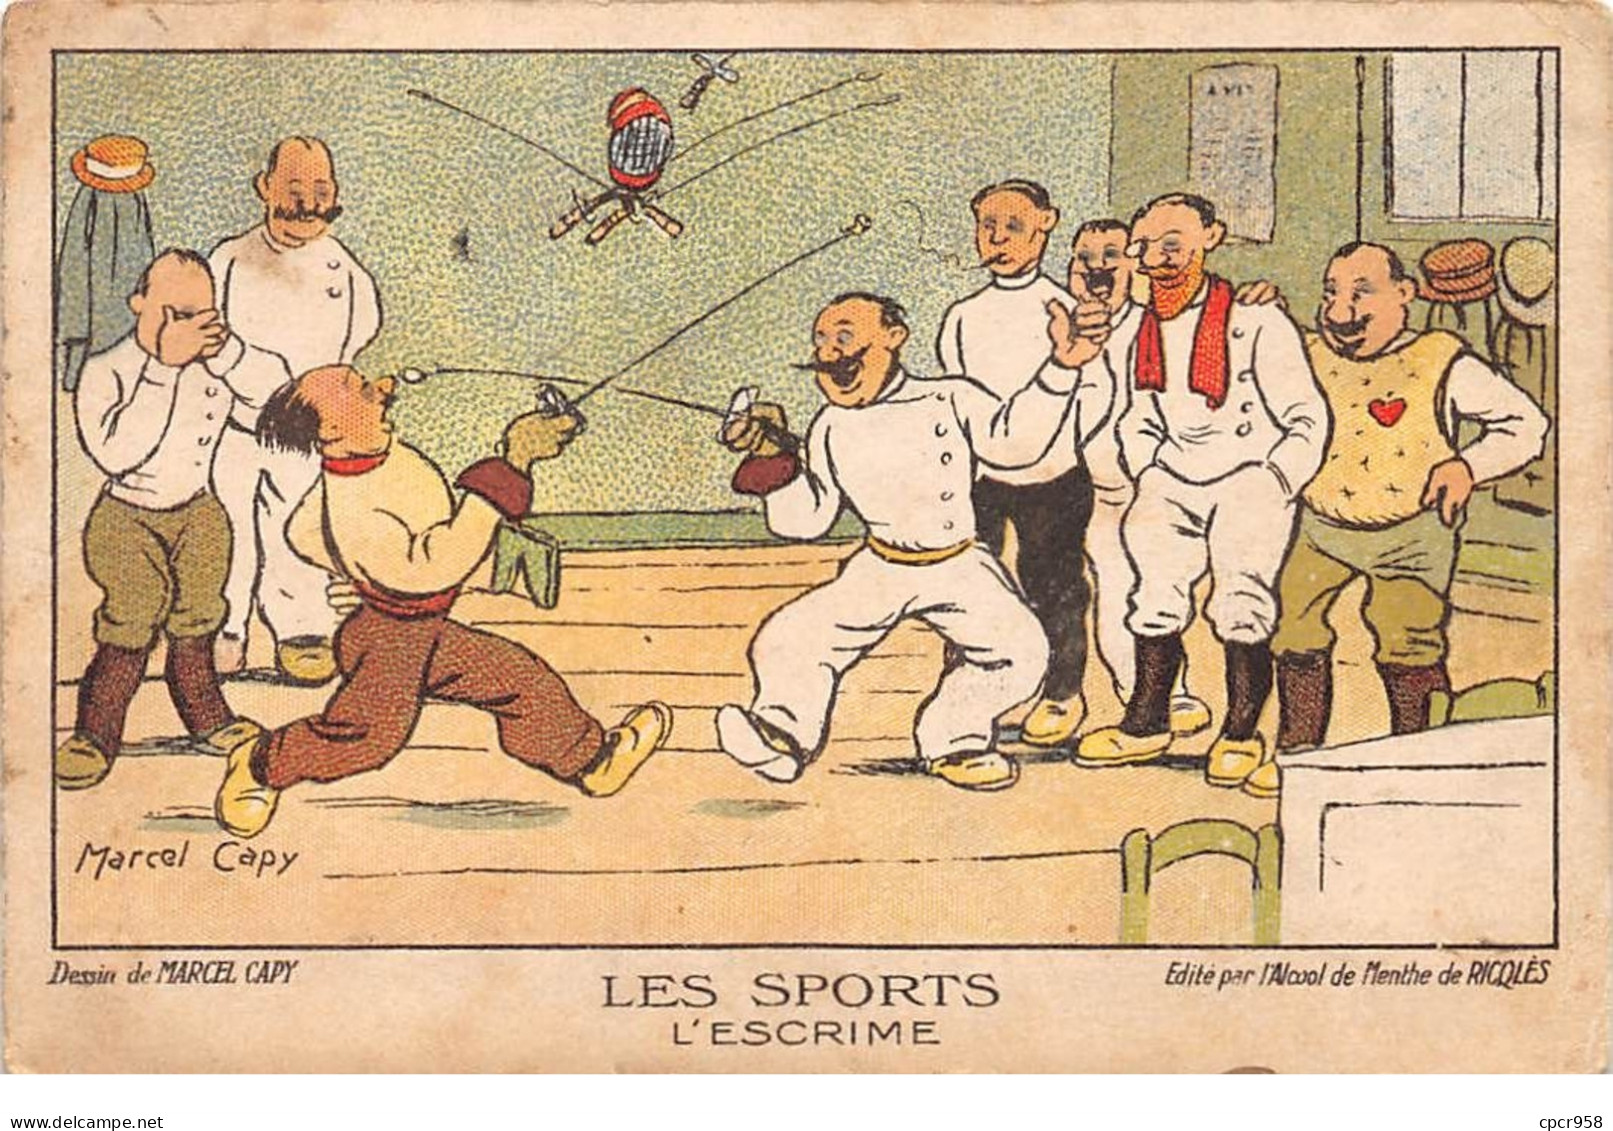 Sports - N°69102 - Escrime - Dessin De Marcel Capy - Alcool De Menthe De Ricqlès - Carte Publicitaire - Scherma